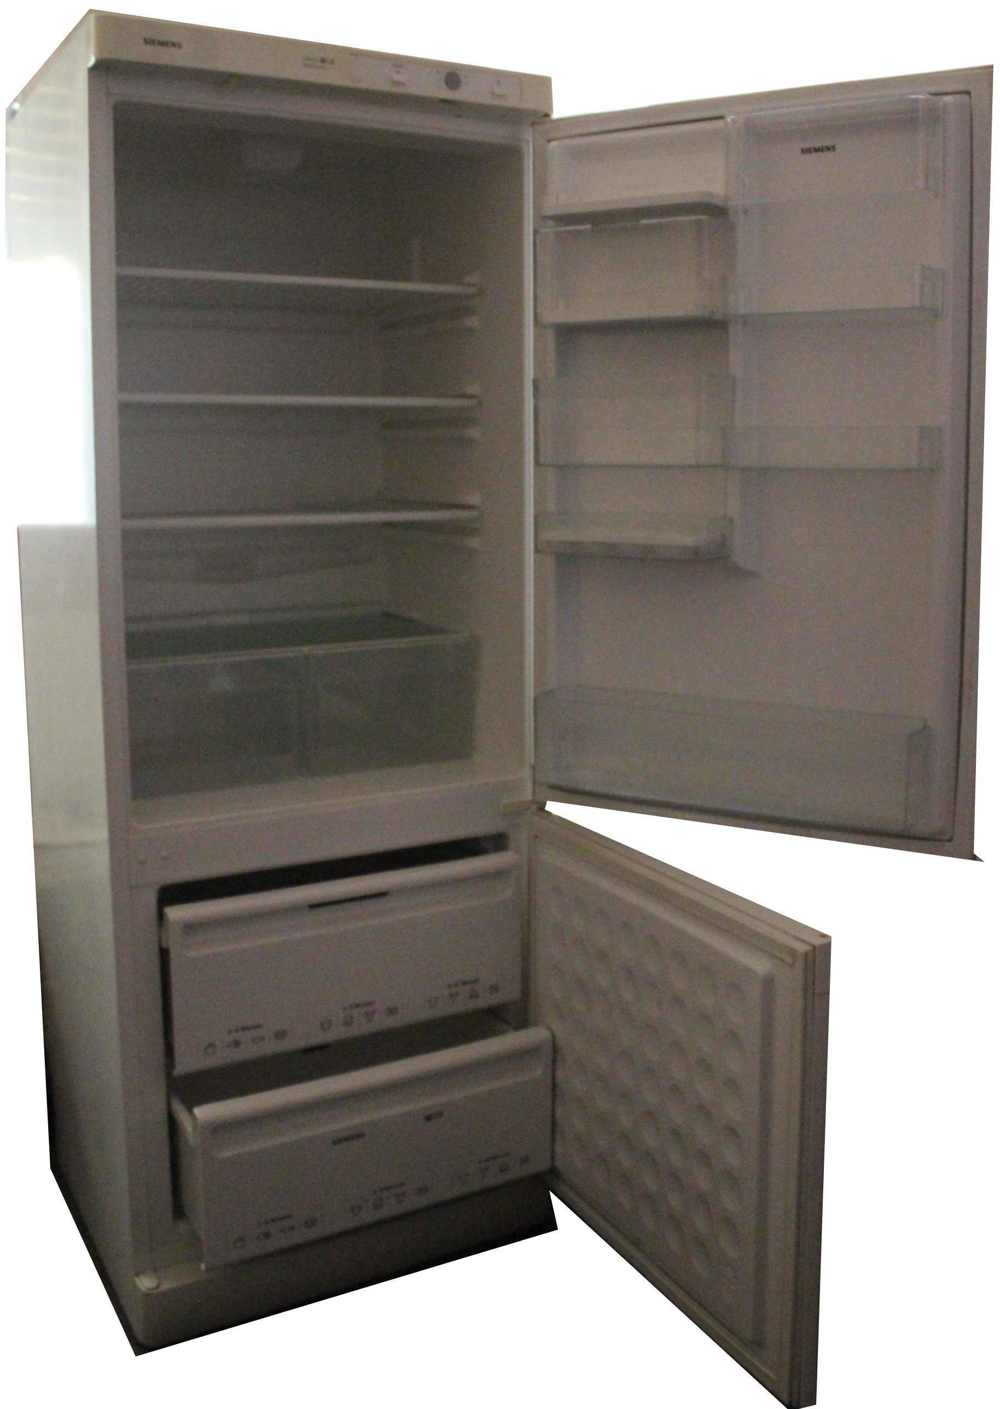 Kühlschrank+Tiefkühlteil zu verschenken